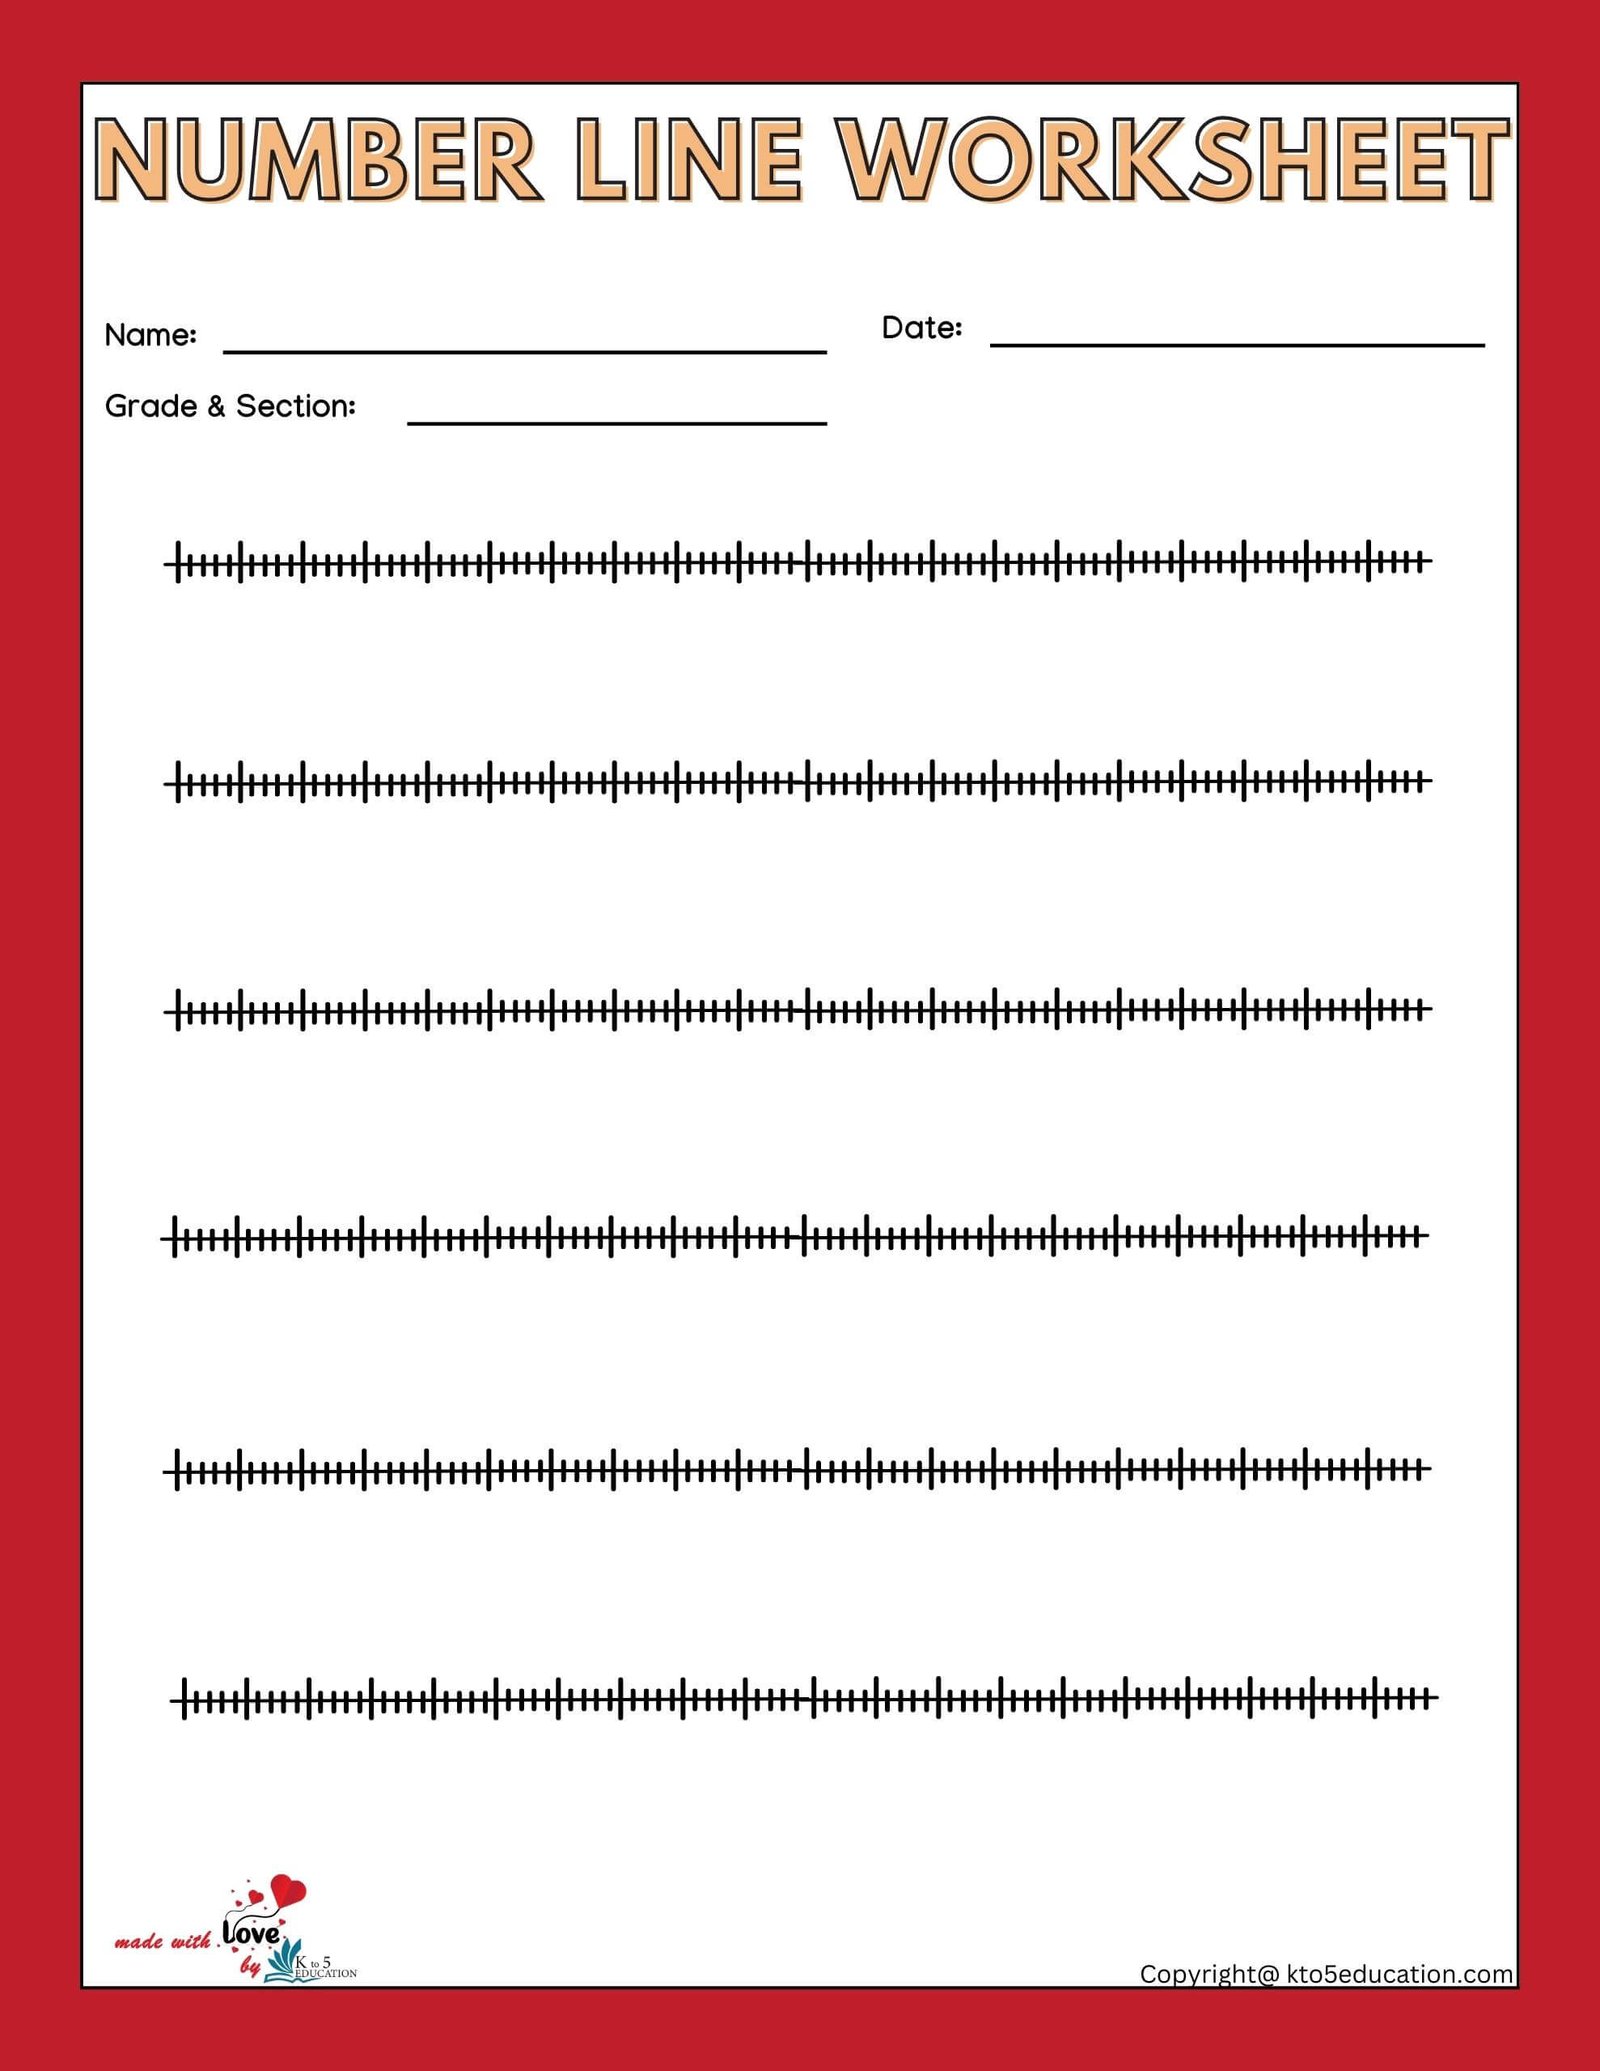 Free Blank Number Line Worksheet Foe 3rd Grade 1-100